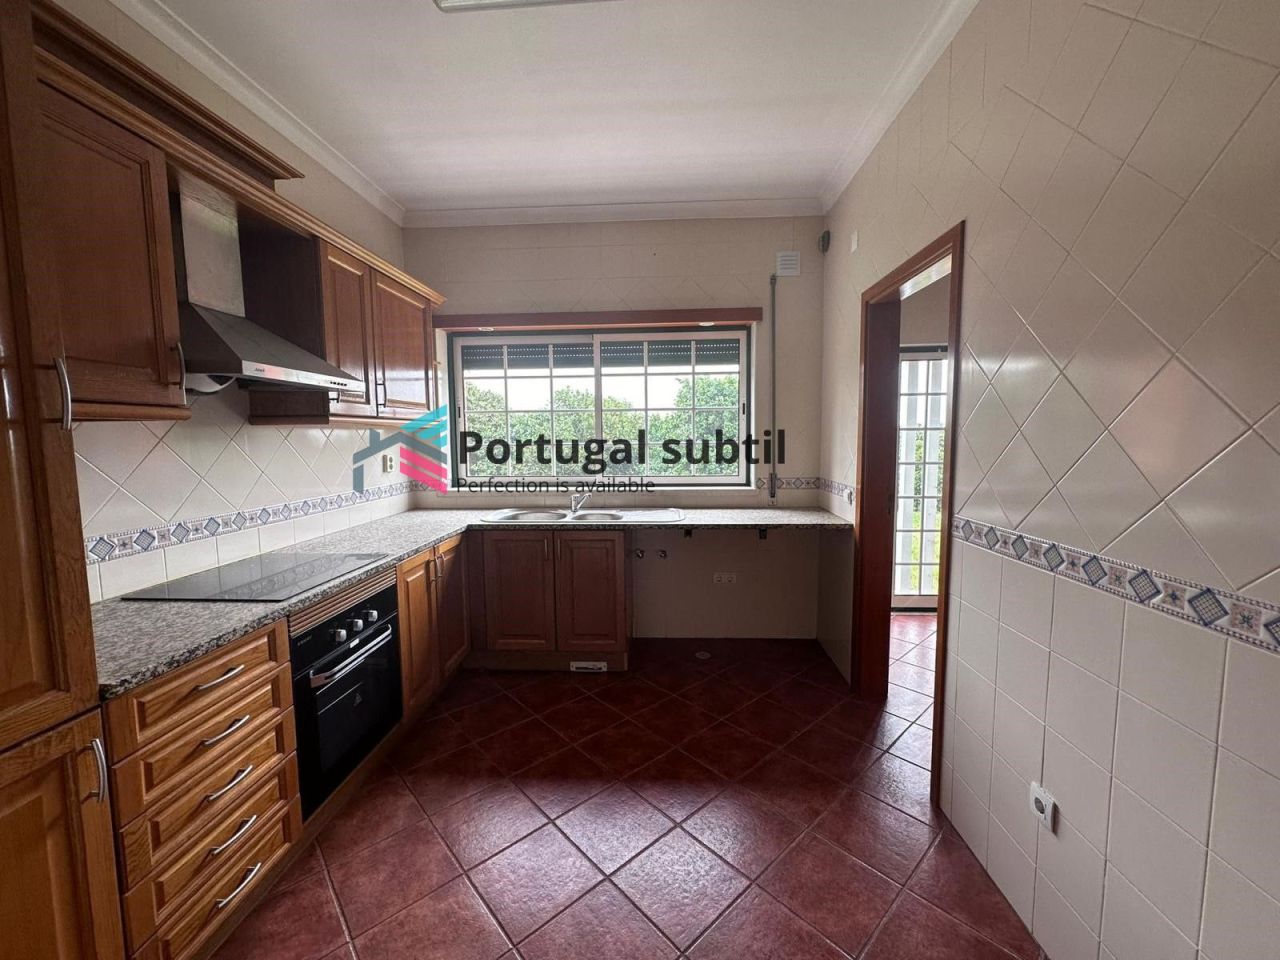 Appartement à Santarem, Portugal, 83 m2 - image 1